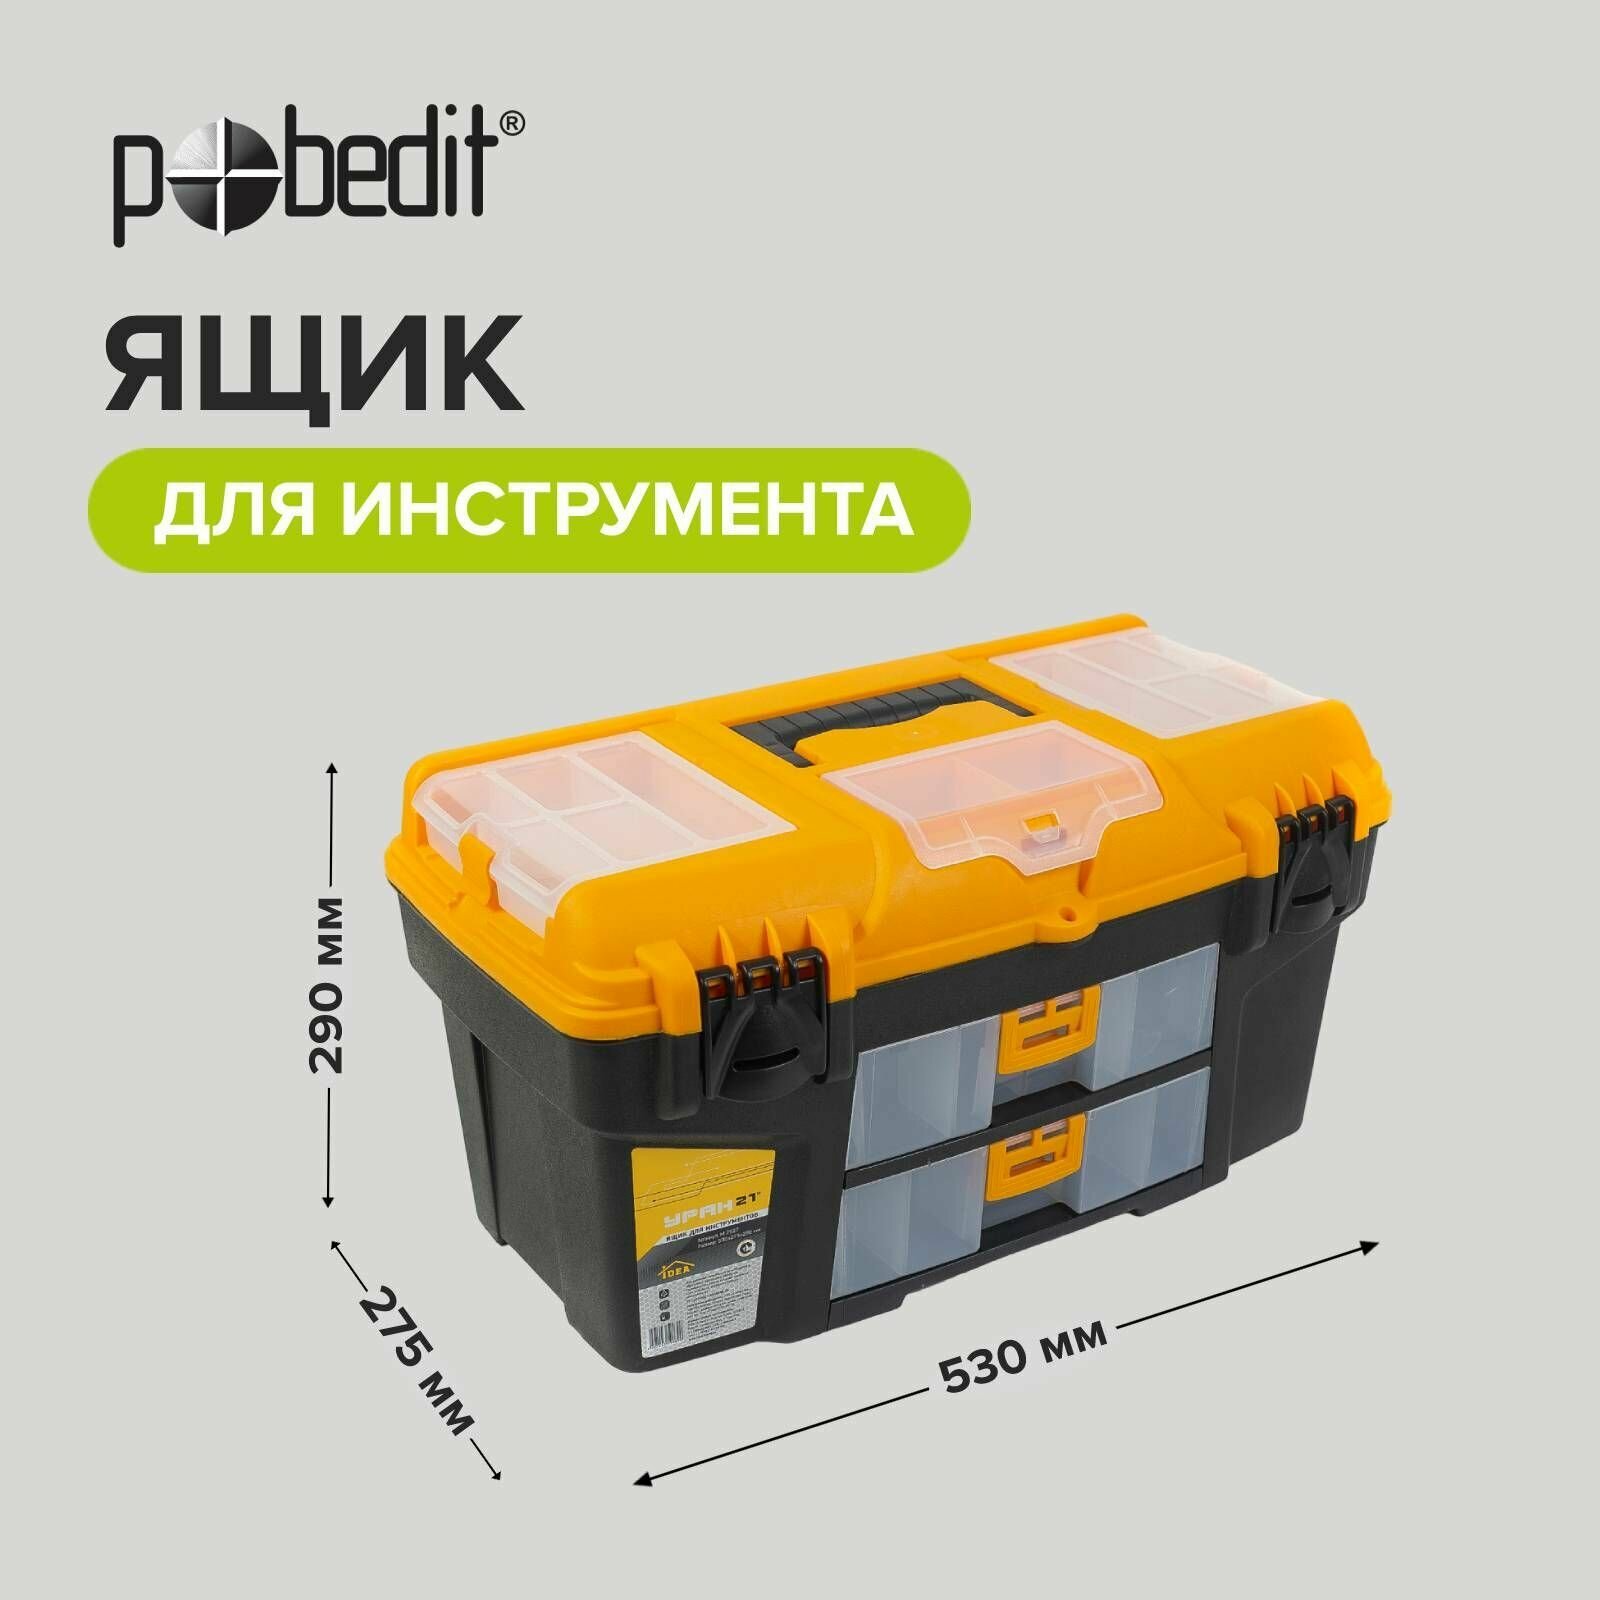 Ящик для инструментов 21", 530х275х290 мм с двумя съемными органайзерами Pobedit